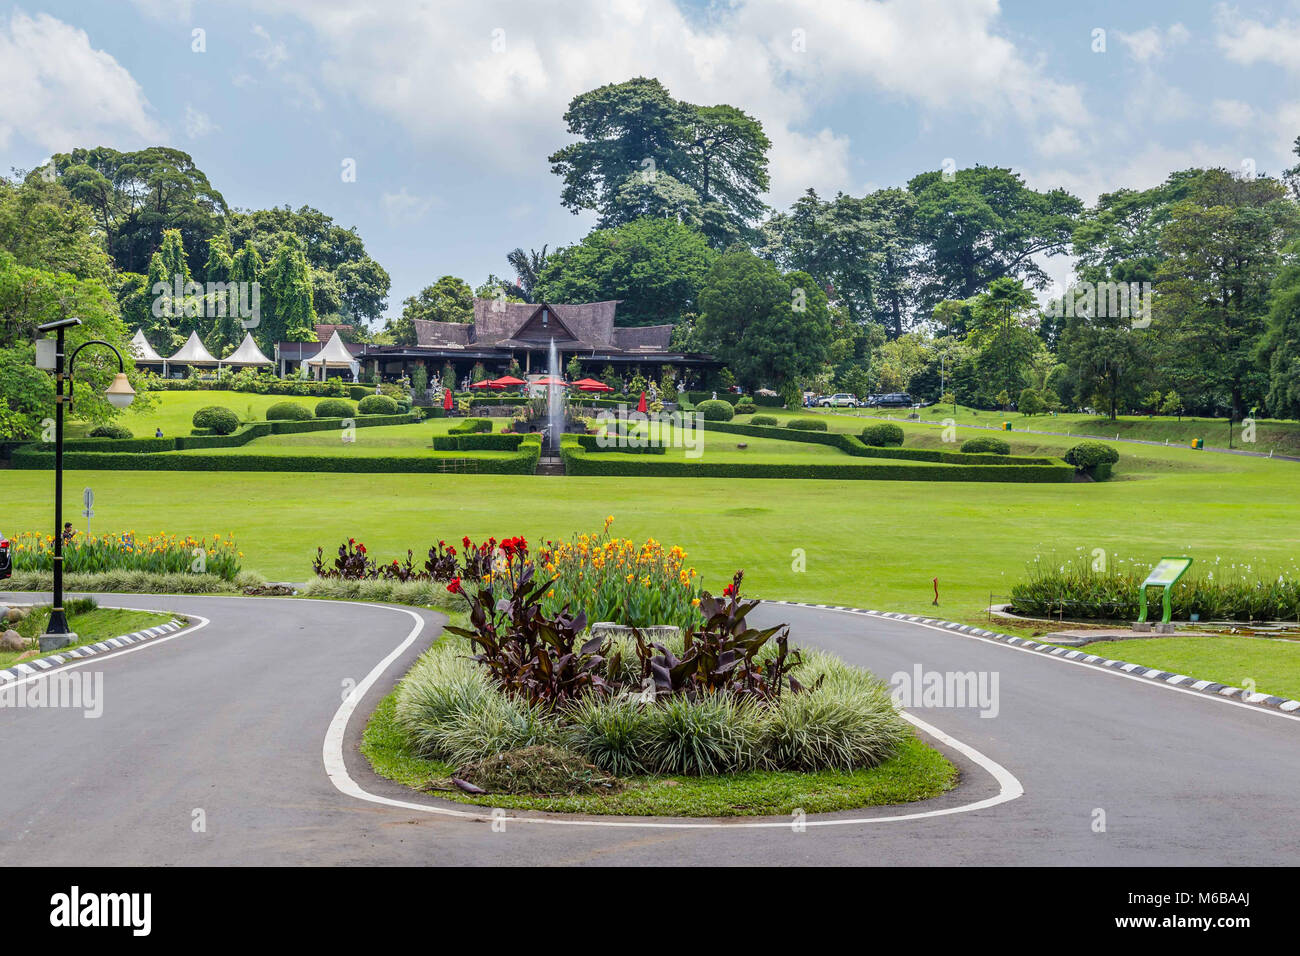 Botanical Gardens Kebun Raya In Bogor West Java Indonesia Stock Photo Alamy